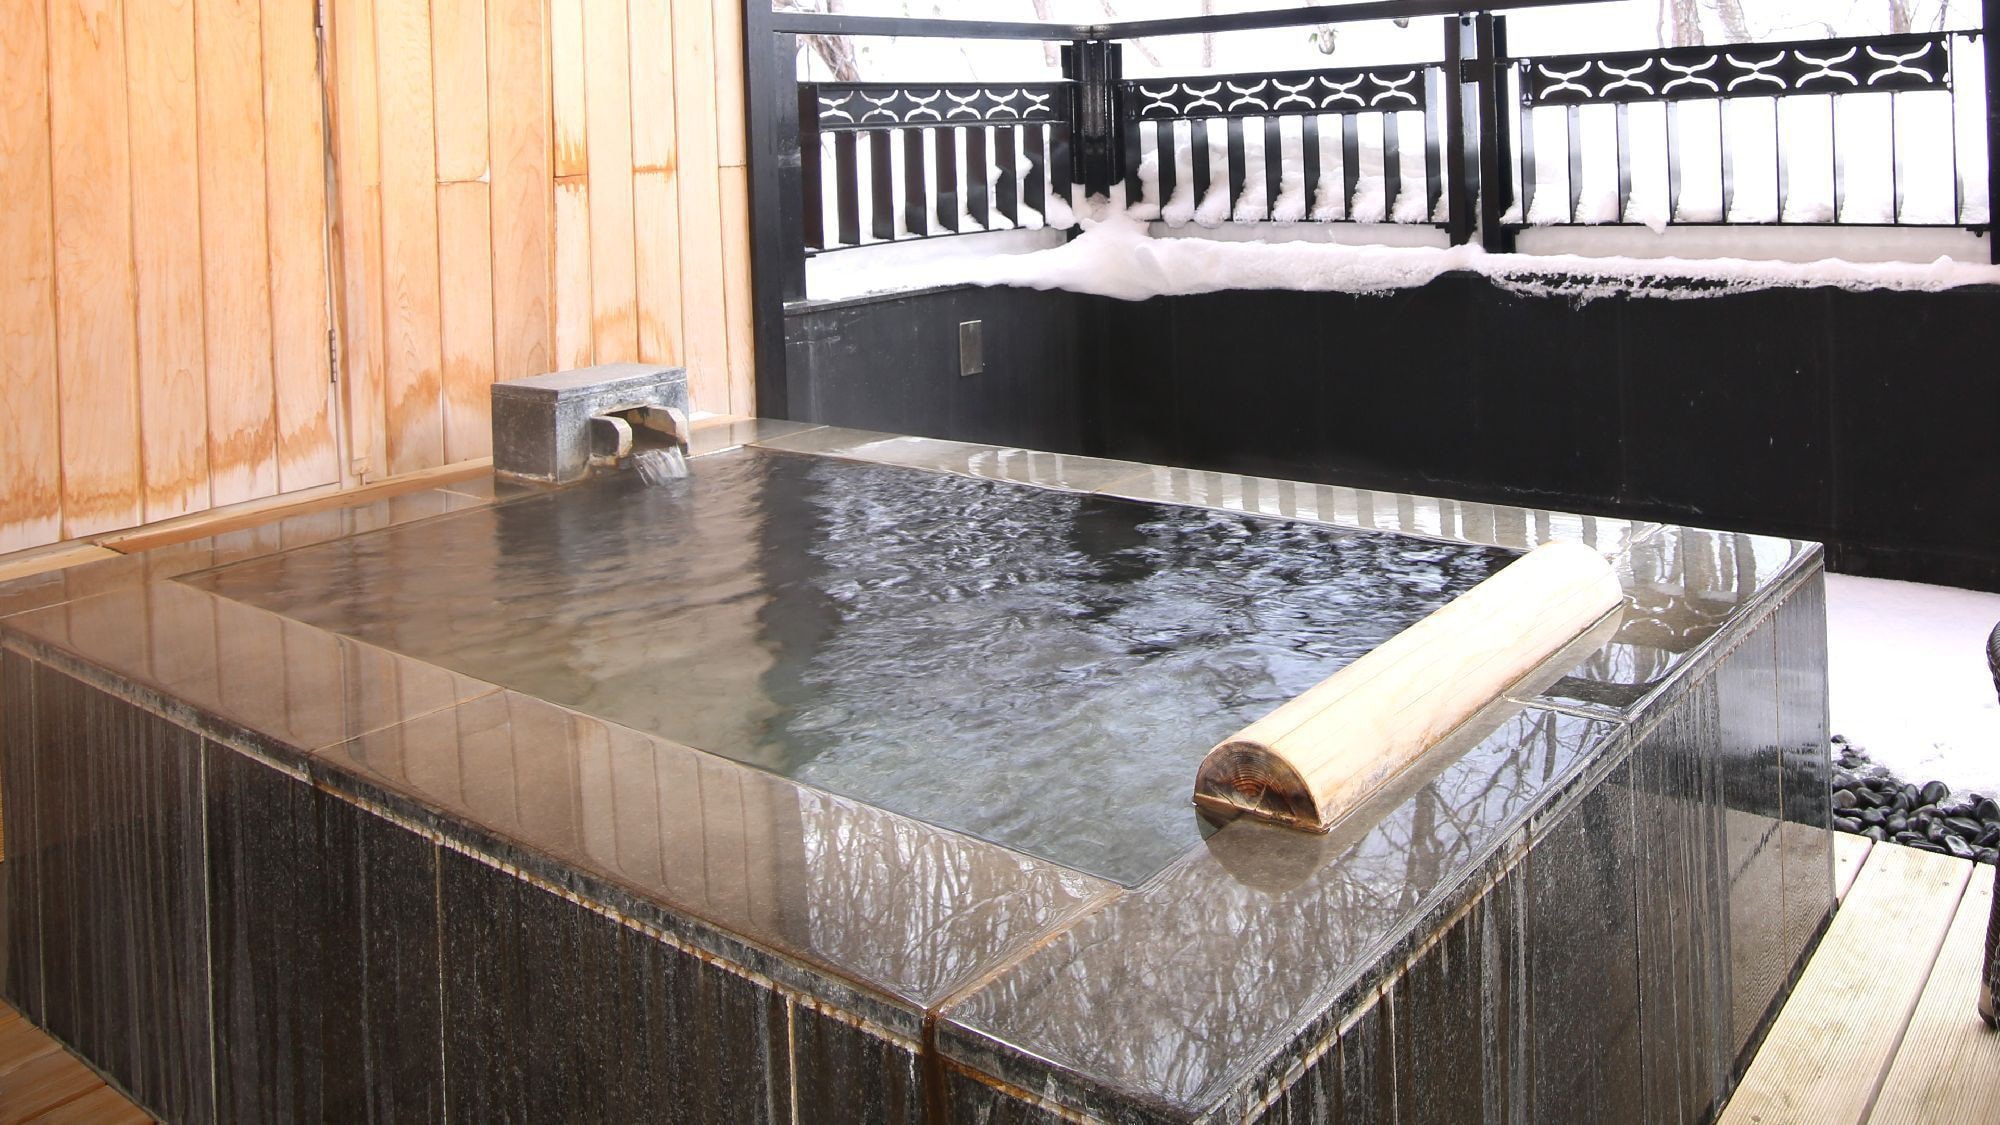 ◆ 帶溫泉露天浴池的2人套房（例）/ 52平方米的套房推薦給情侶和情侶